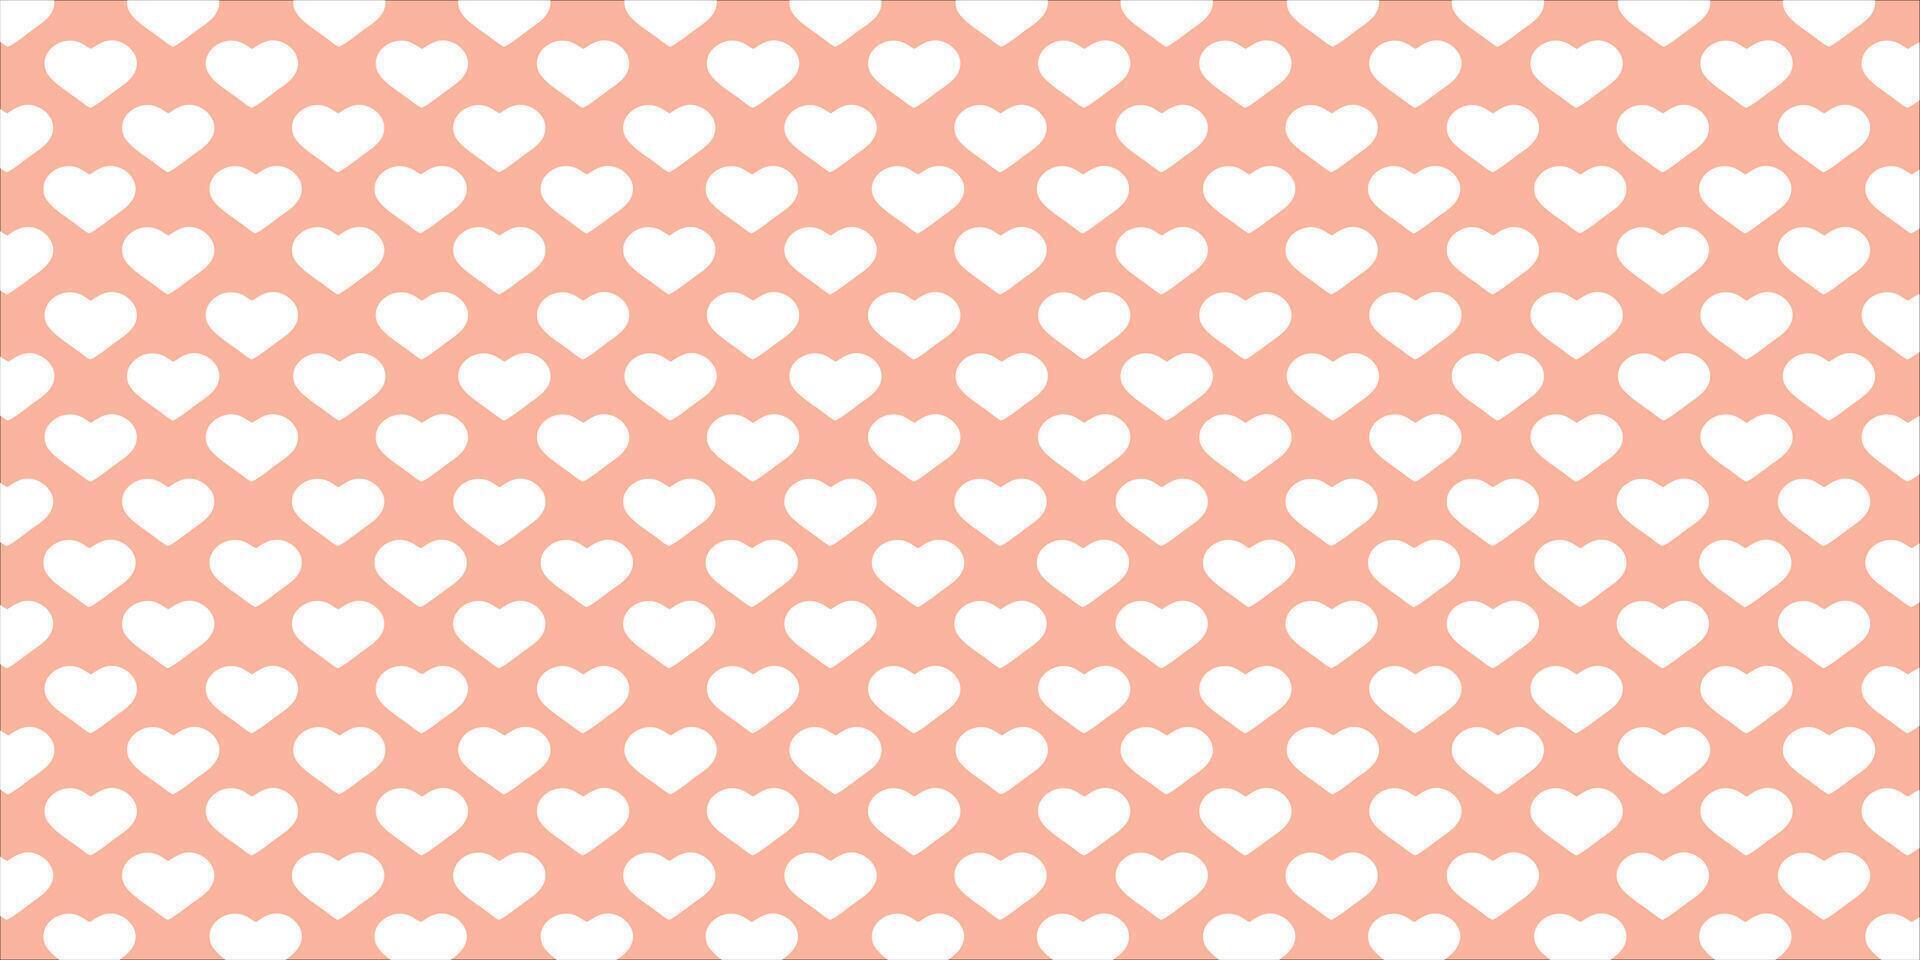 söt kärlek hjärta sömlös mönster illustration. söt romantisk rosa hjärtan bakgrund skriva ut. hjärtans dag Semester, romantisk bröllop design. vektor